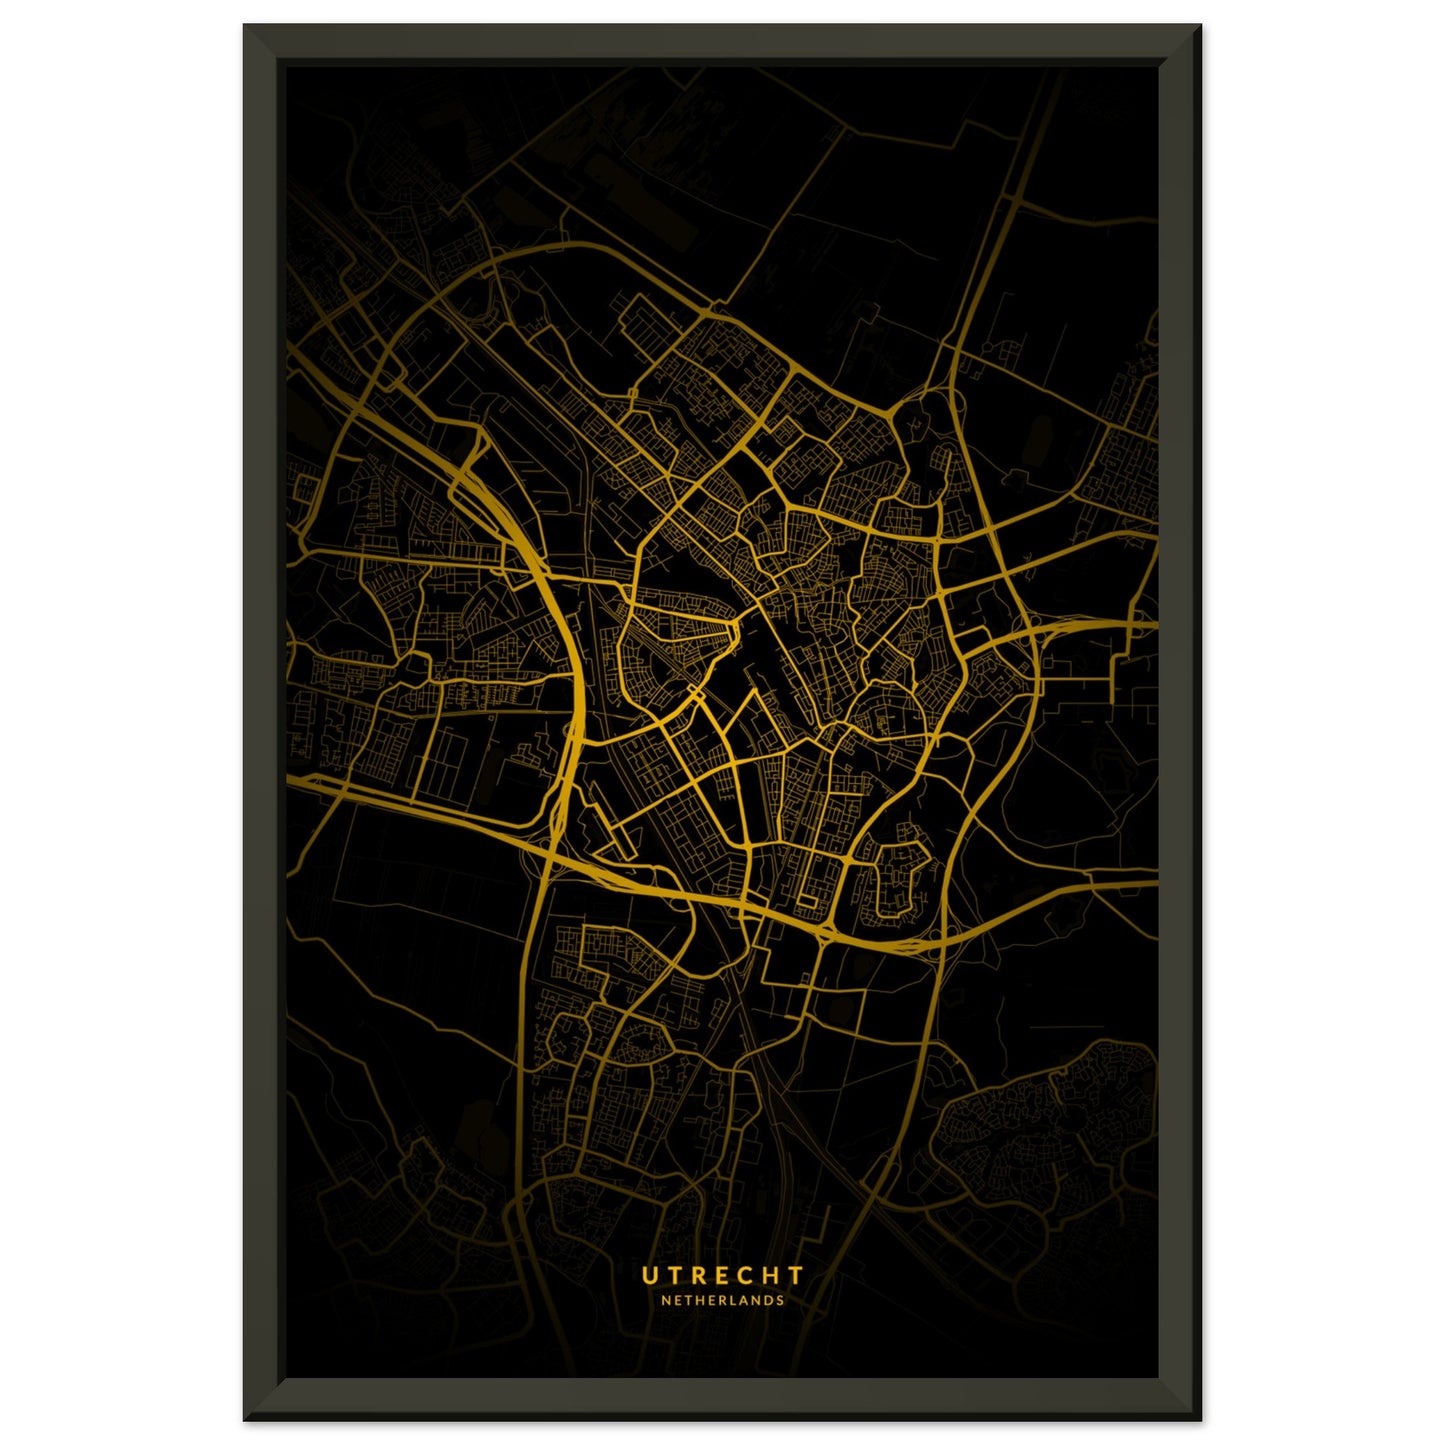 Utrecht map